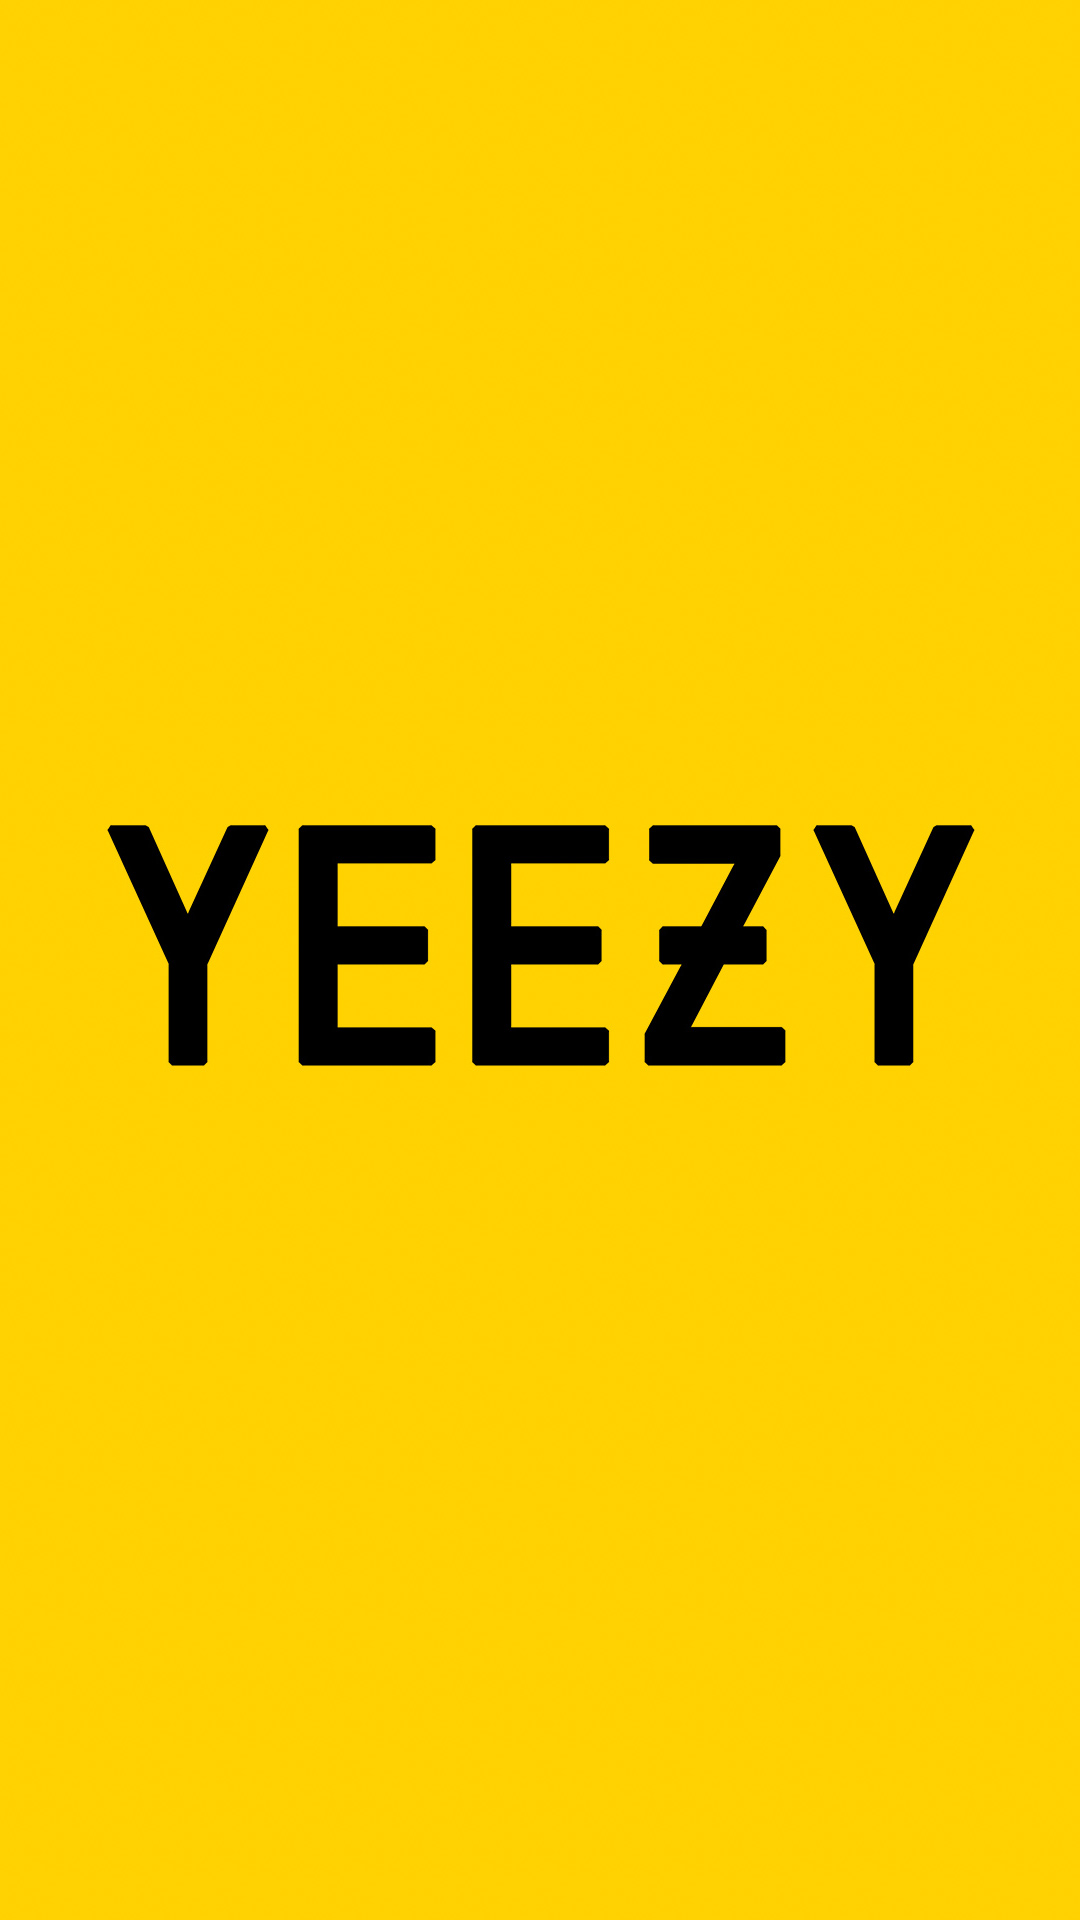 Yeezy Yellow